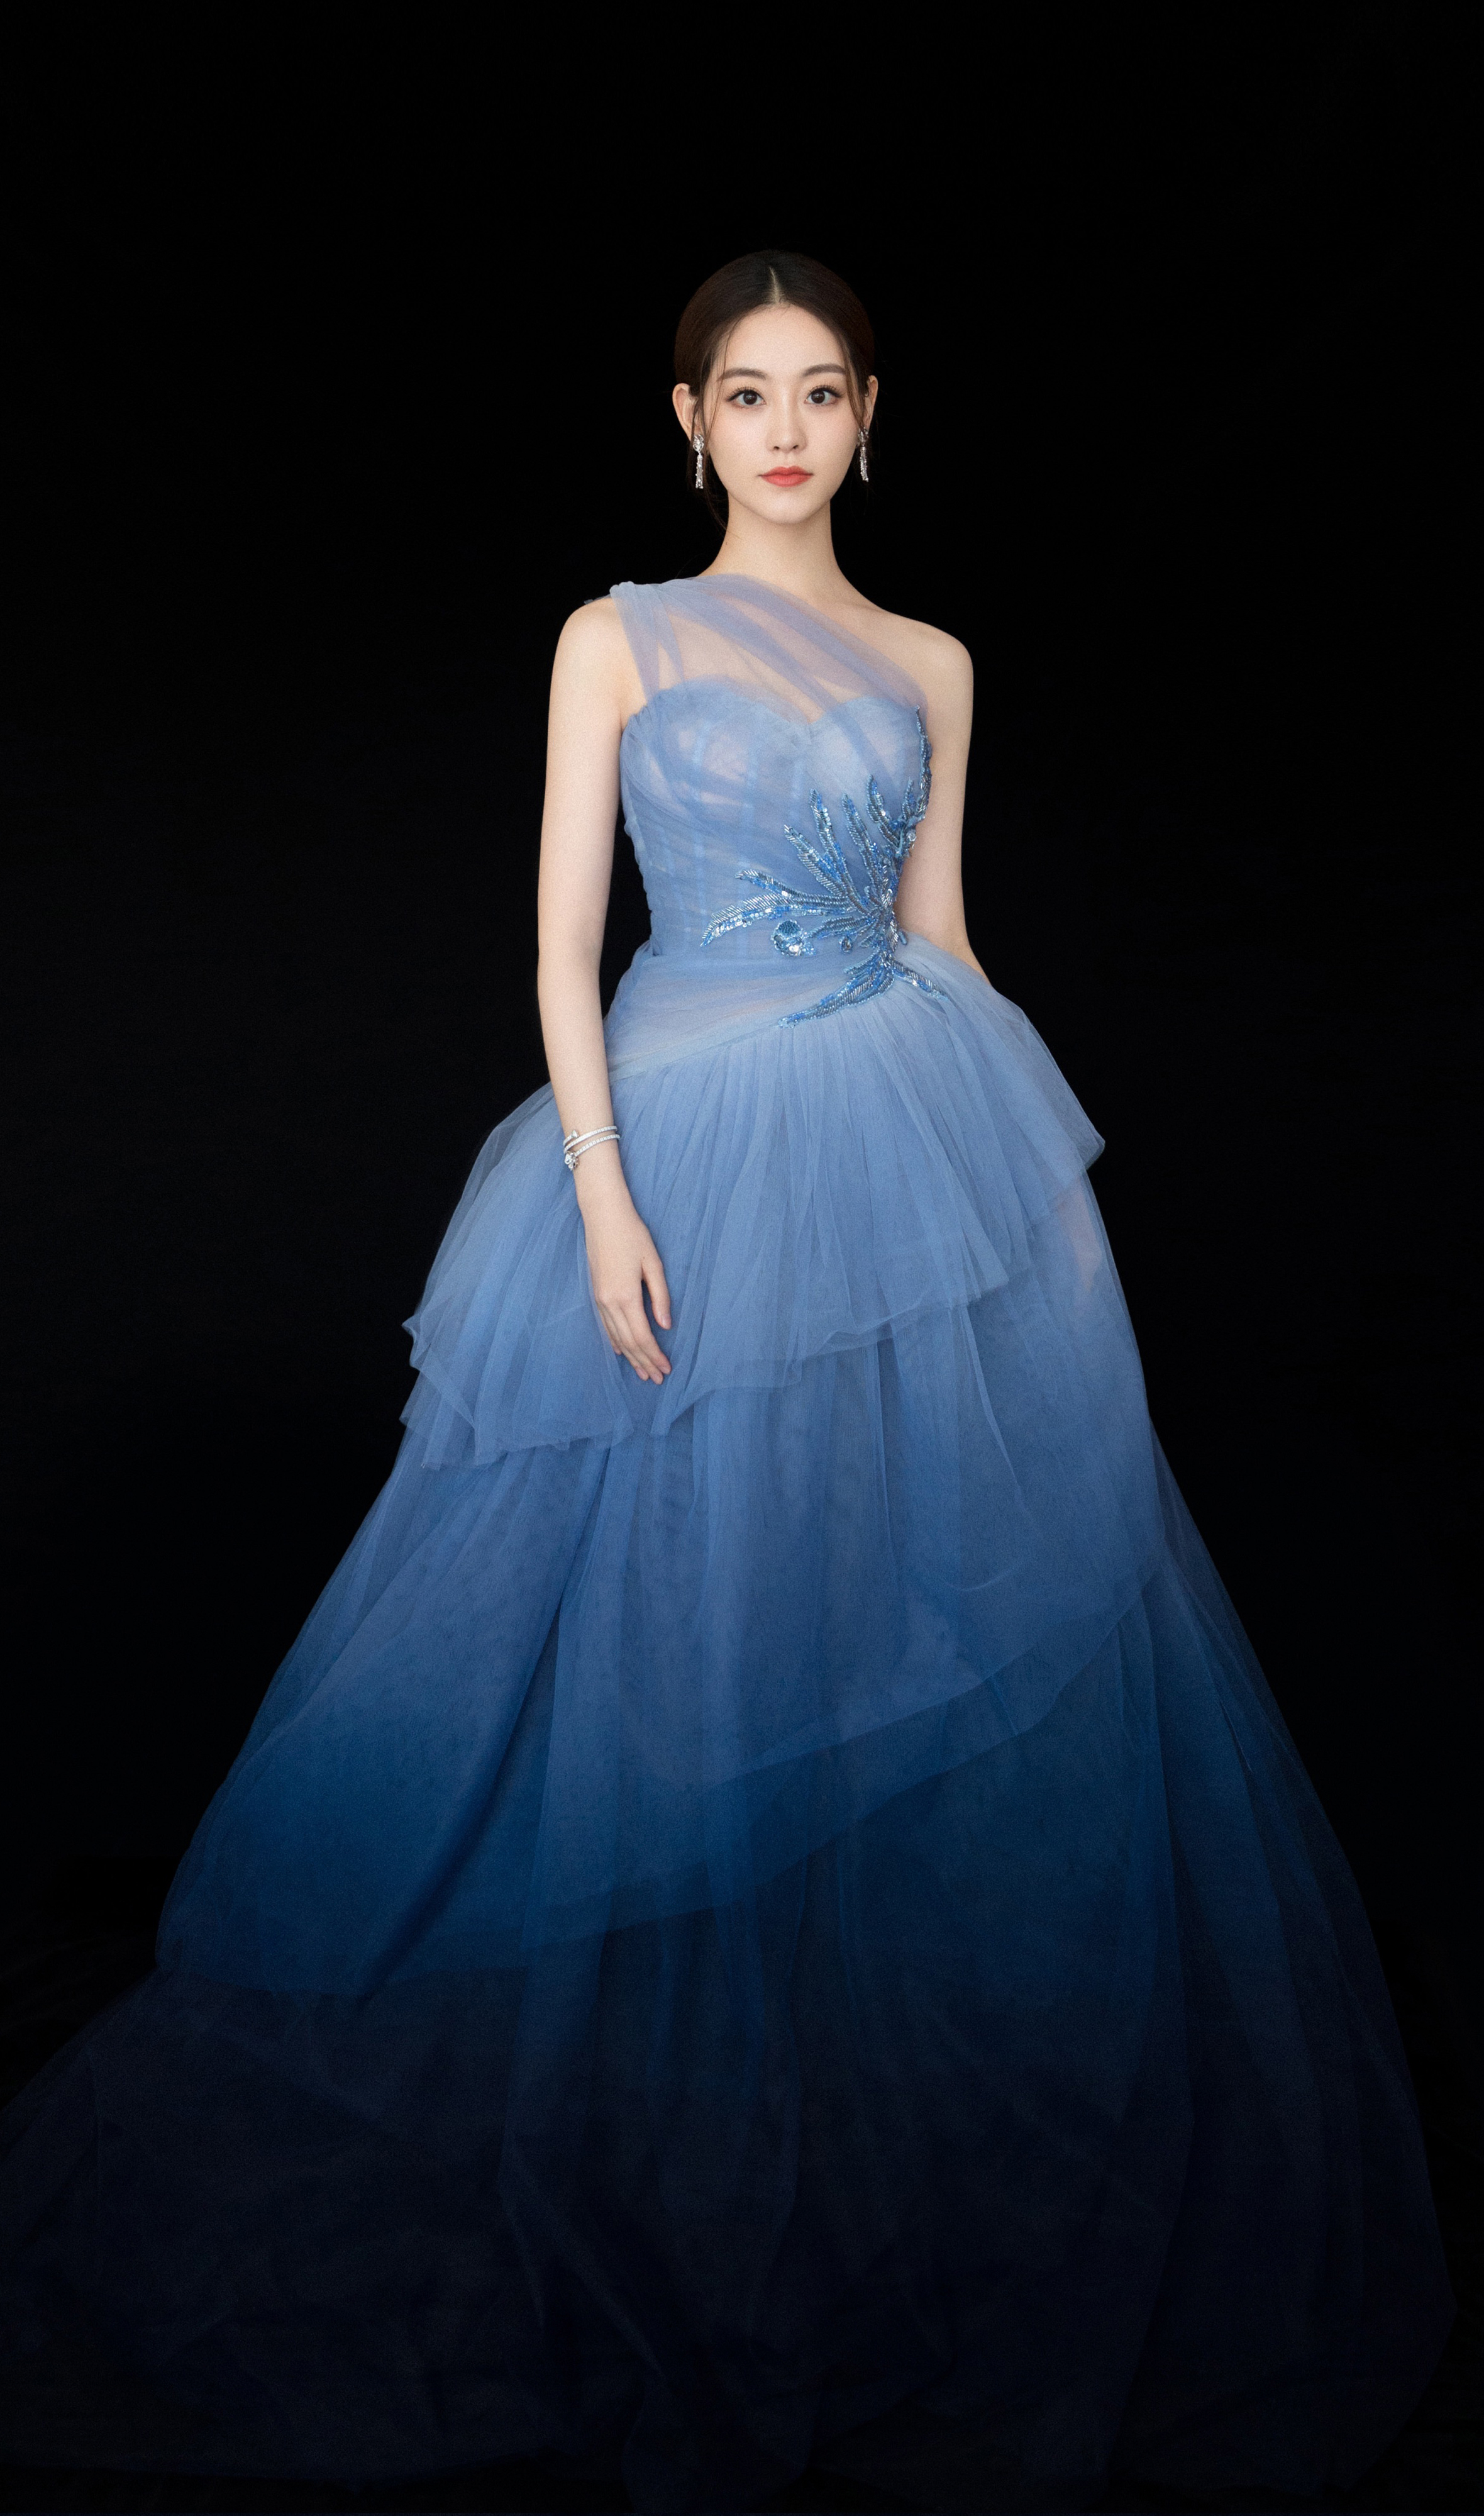 美图:祝绪丹身着一袭蓝色纱裙优雅动人